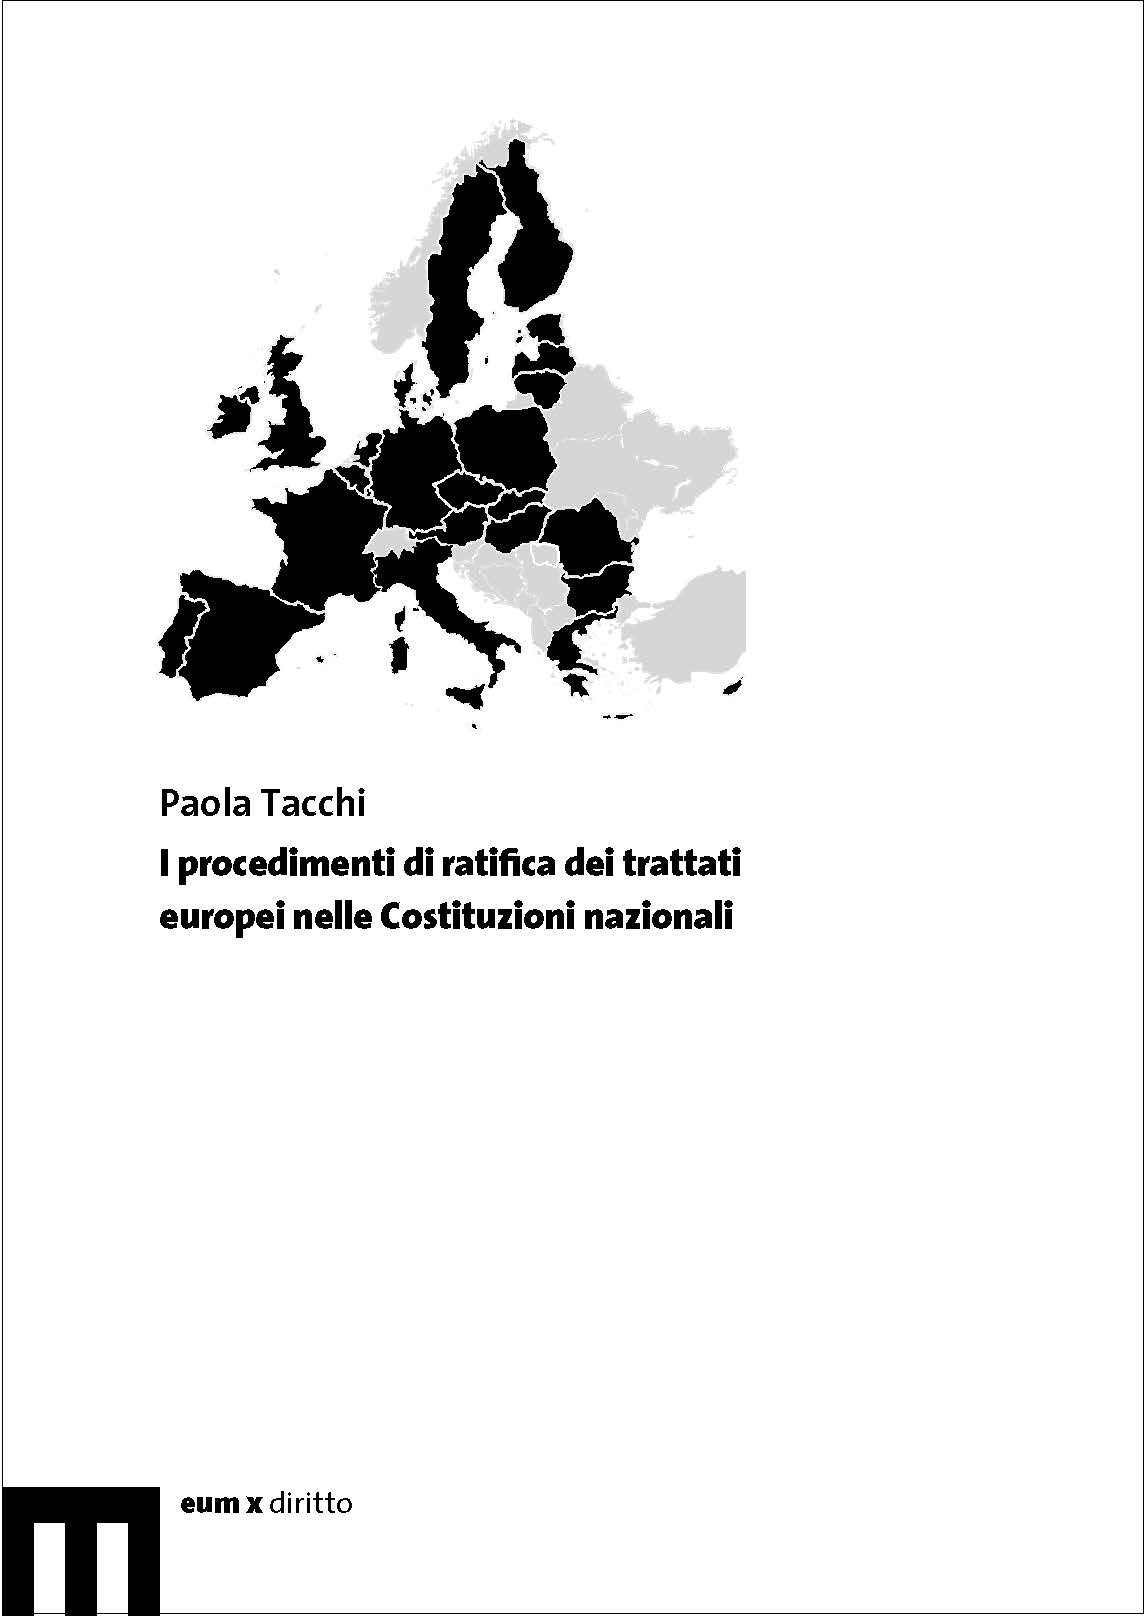 I procedimenti di ratifica dei trattati europei nelle Costituzioni nazionali